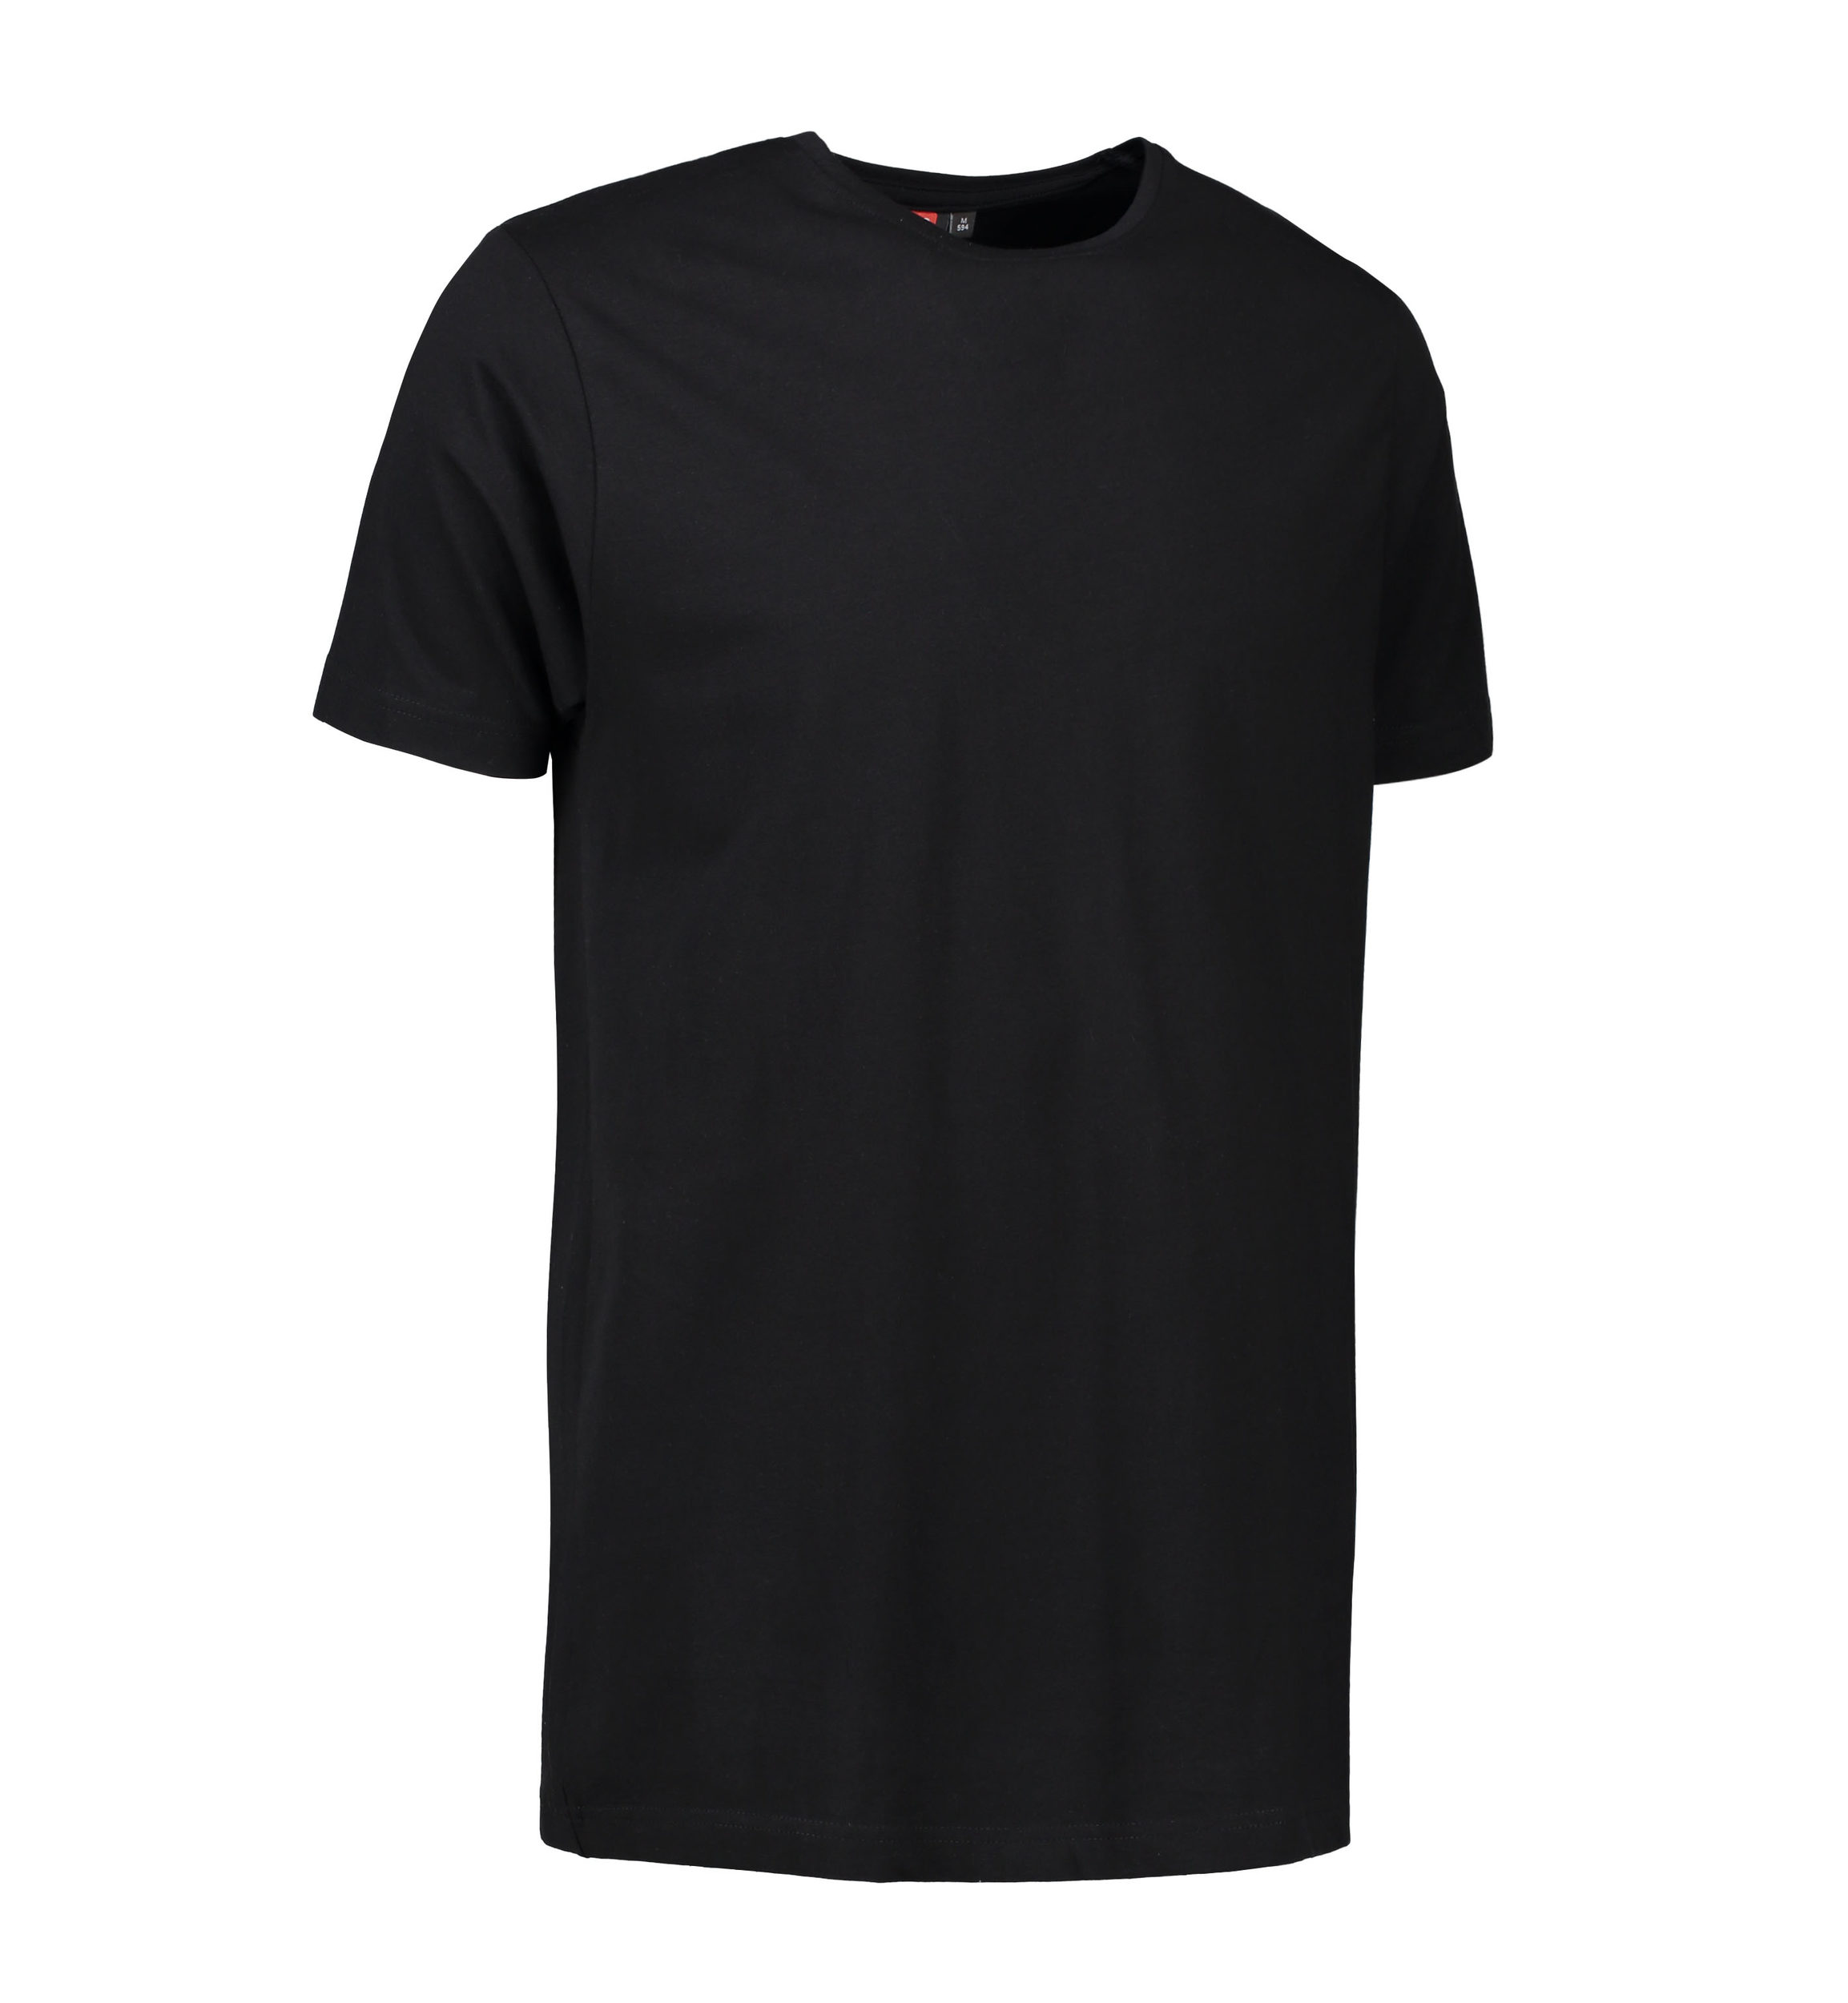 Billede af Stretch t-shirt til mænd i sort - M hos Sygeplejebutikken.dk